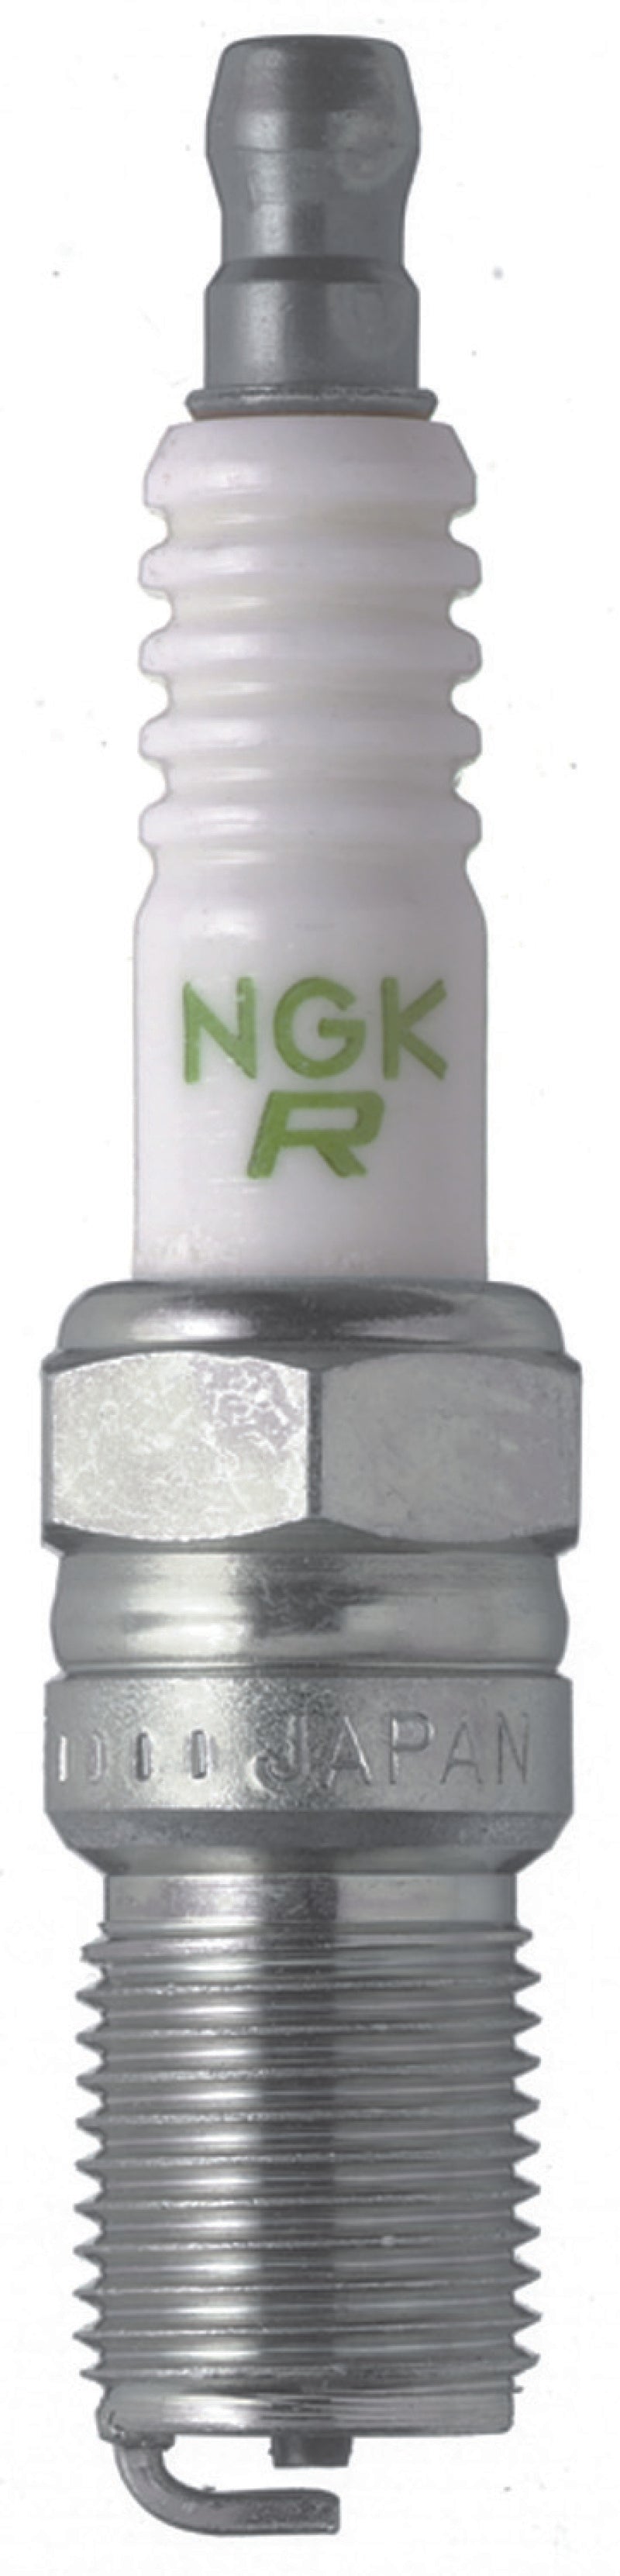 NGK Nickel Spark Plug Box of 10 (BR7EF).